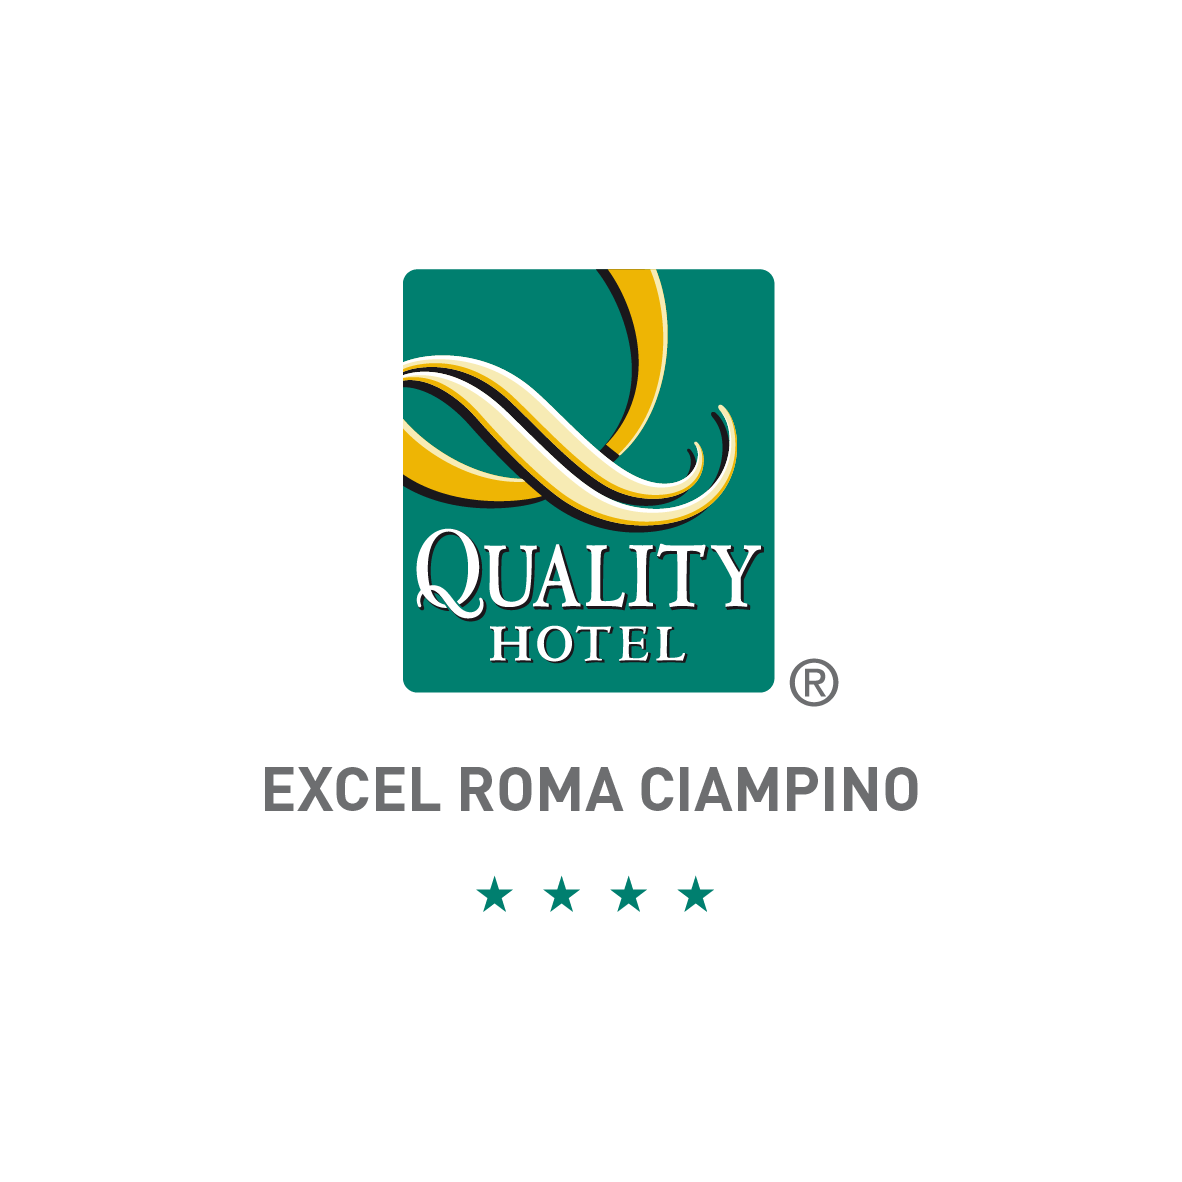 08 - Quality Hotel Roma Ciampino_Tavola disegno 1